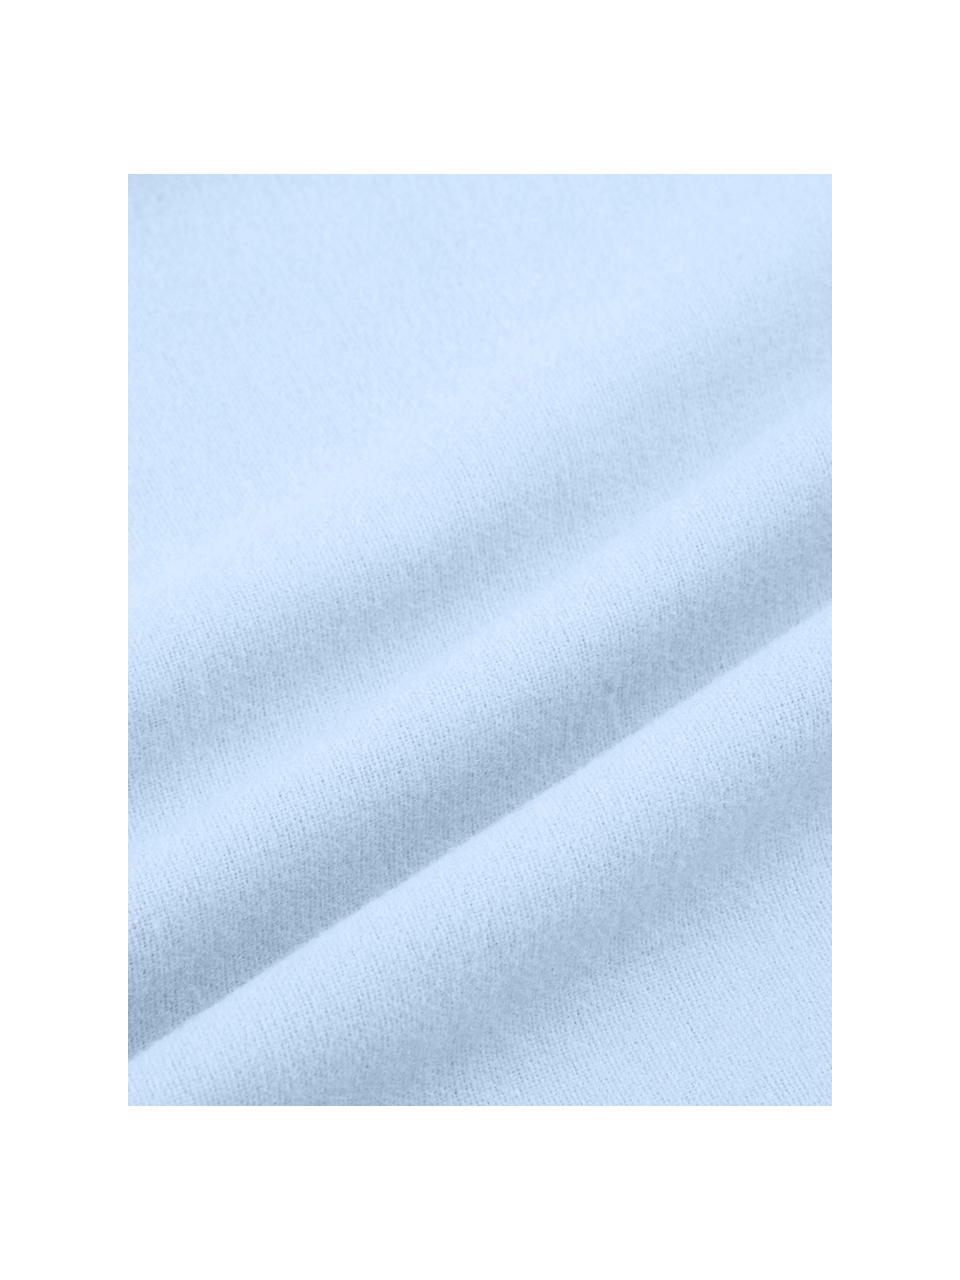 Flanell-Bettwäsche Biba in Hellblau, Webart: Flanell Flanell ist ein s, Hellblau, 240 x 220 cm + 2 Kissen 80 x 80 cm